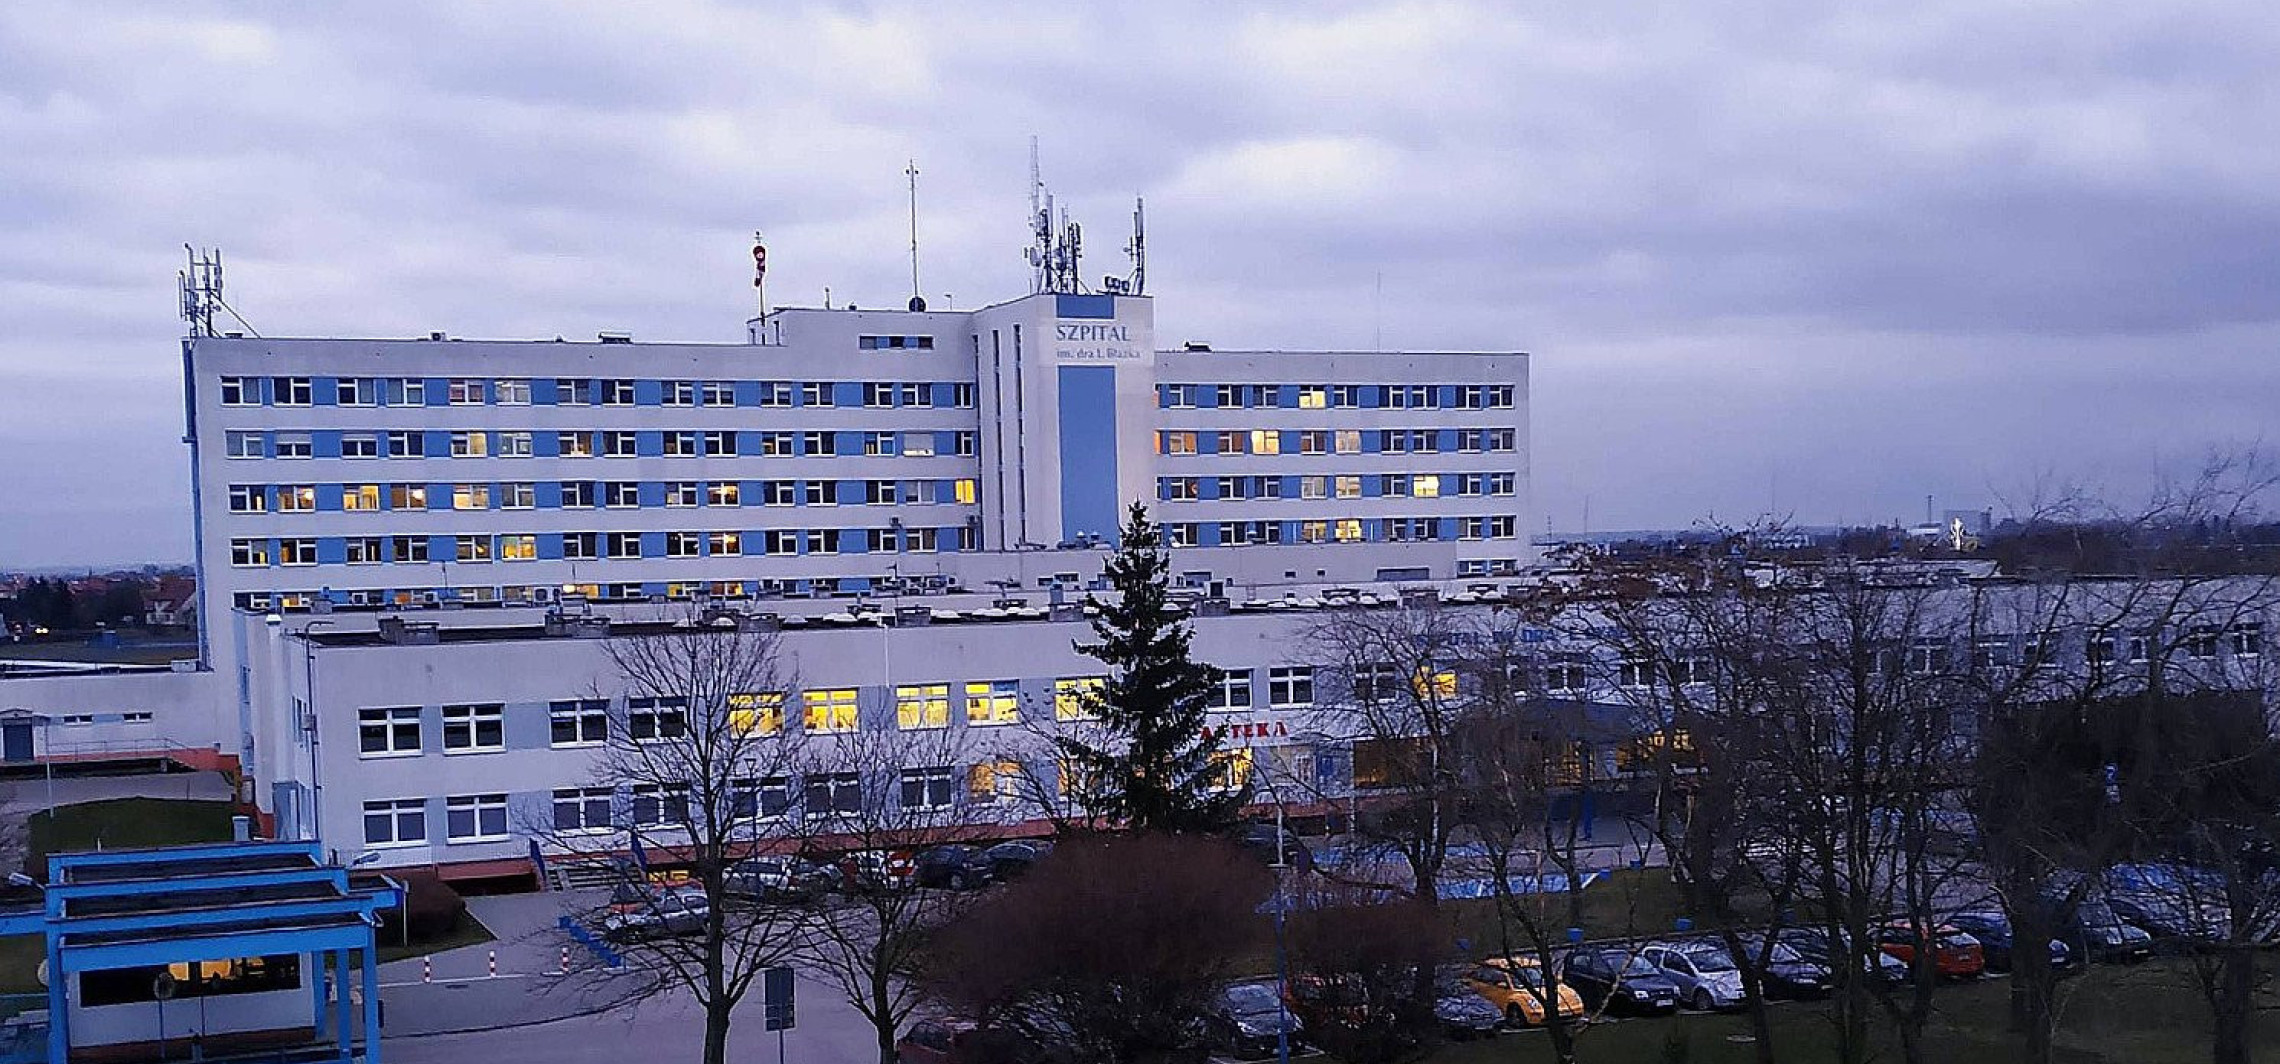 Inowrocław - Szpital zawiesza oddział udarowy. Brakuje lekarzy